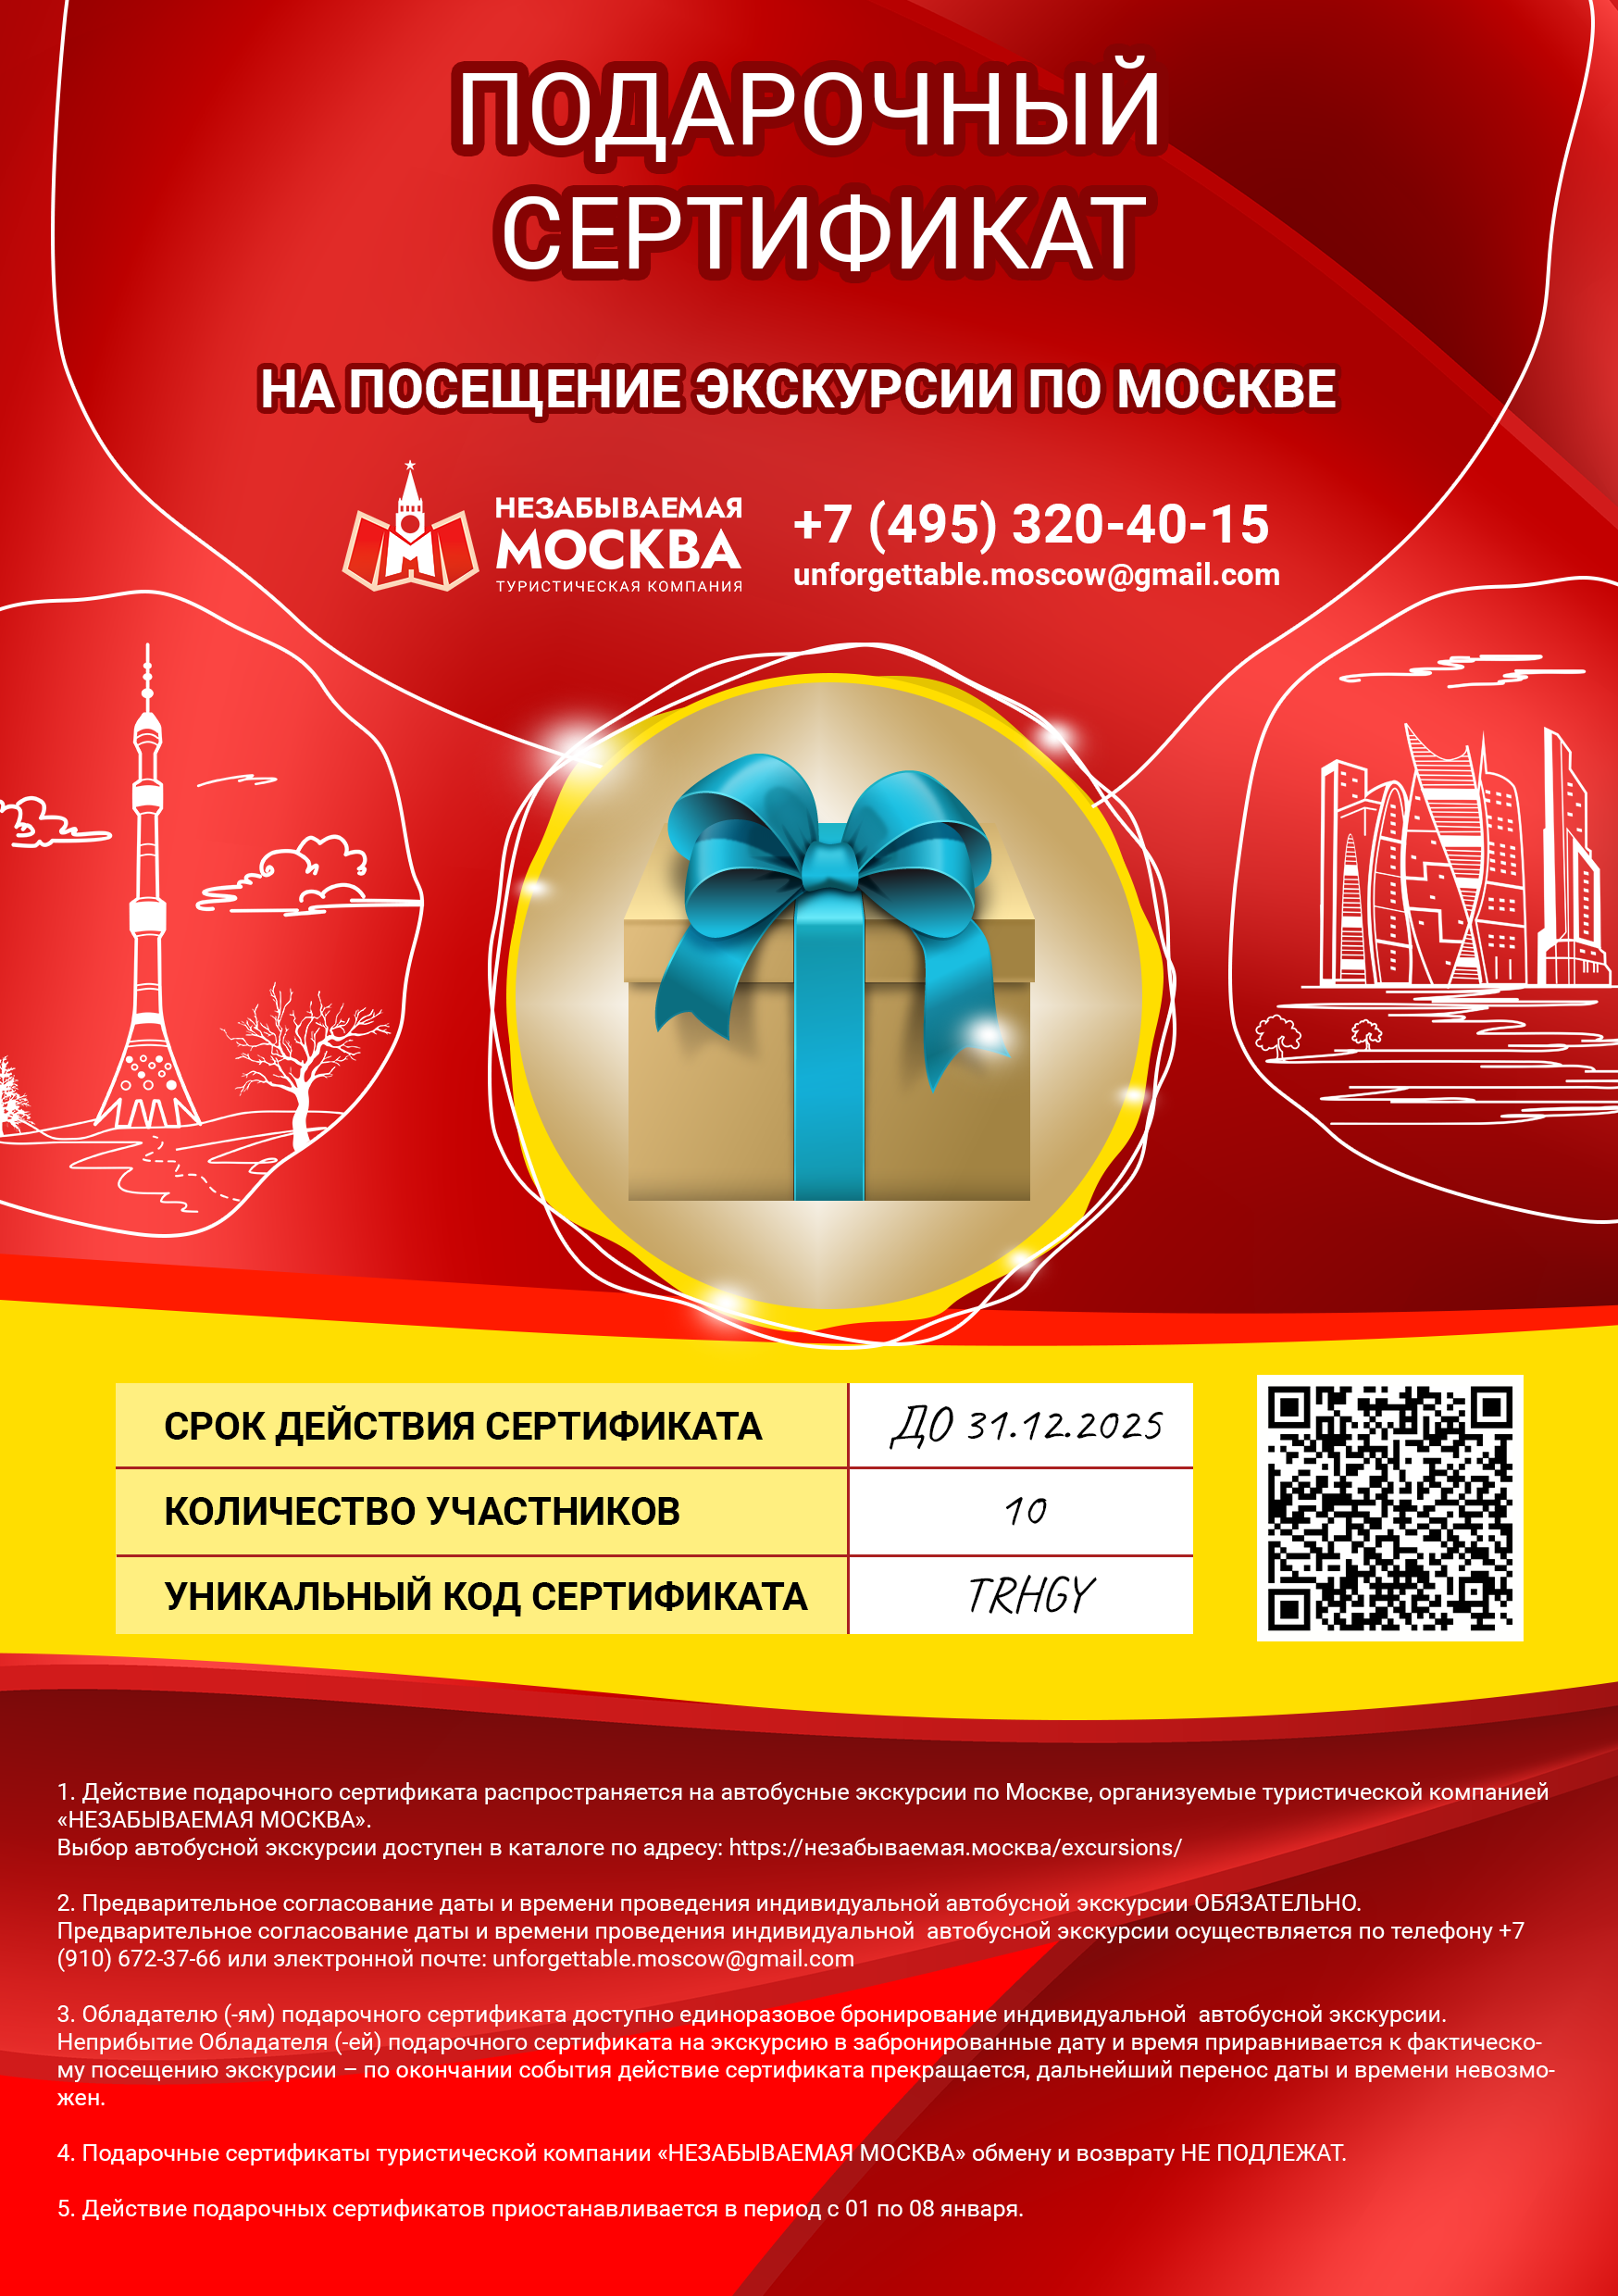 Подарочные сертификаты на посещение экскурсий по Москве